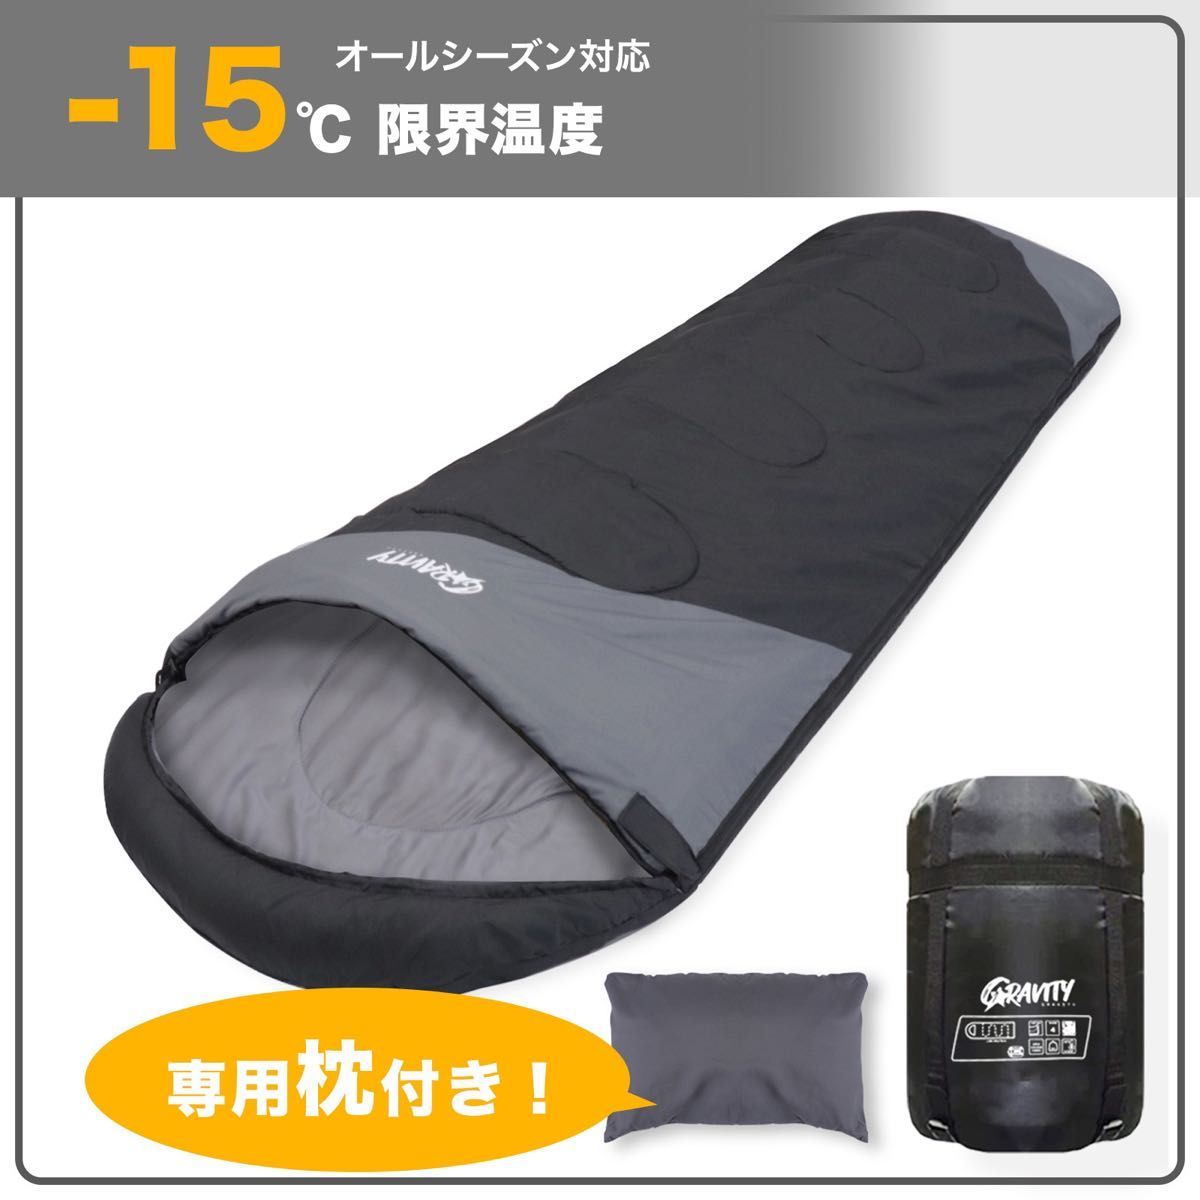 品 寝袋 シュラフ 枕付き 丸洗い可能 防災 旅行 車中泊 アウトドア キャンプ 来客用 210T ブラック